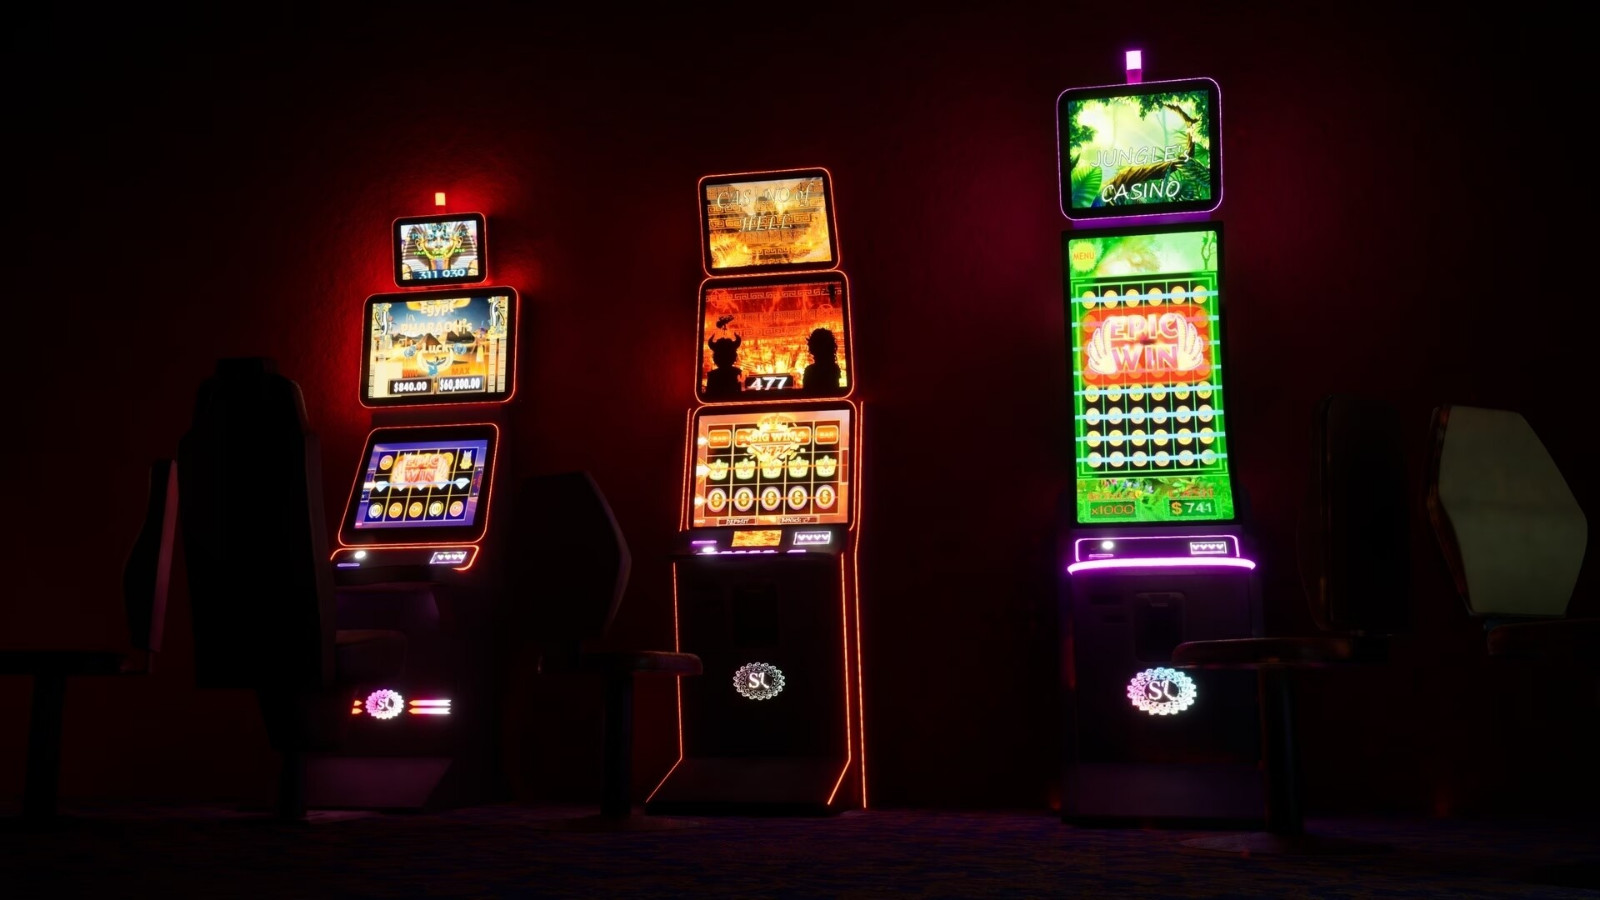 《赌场模拟器》Steam页面上线 第二季度发售